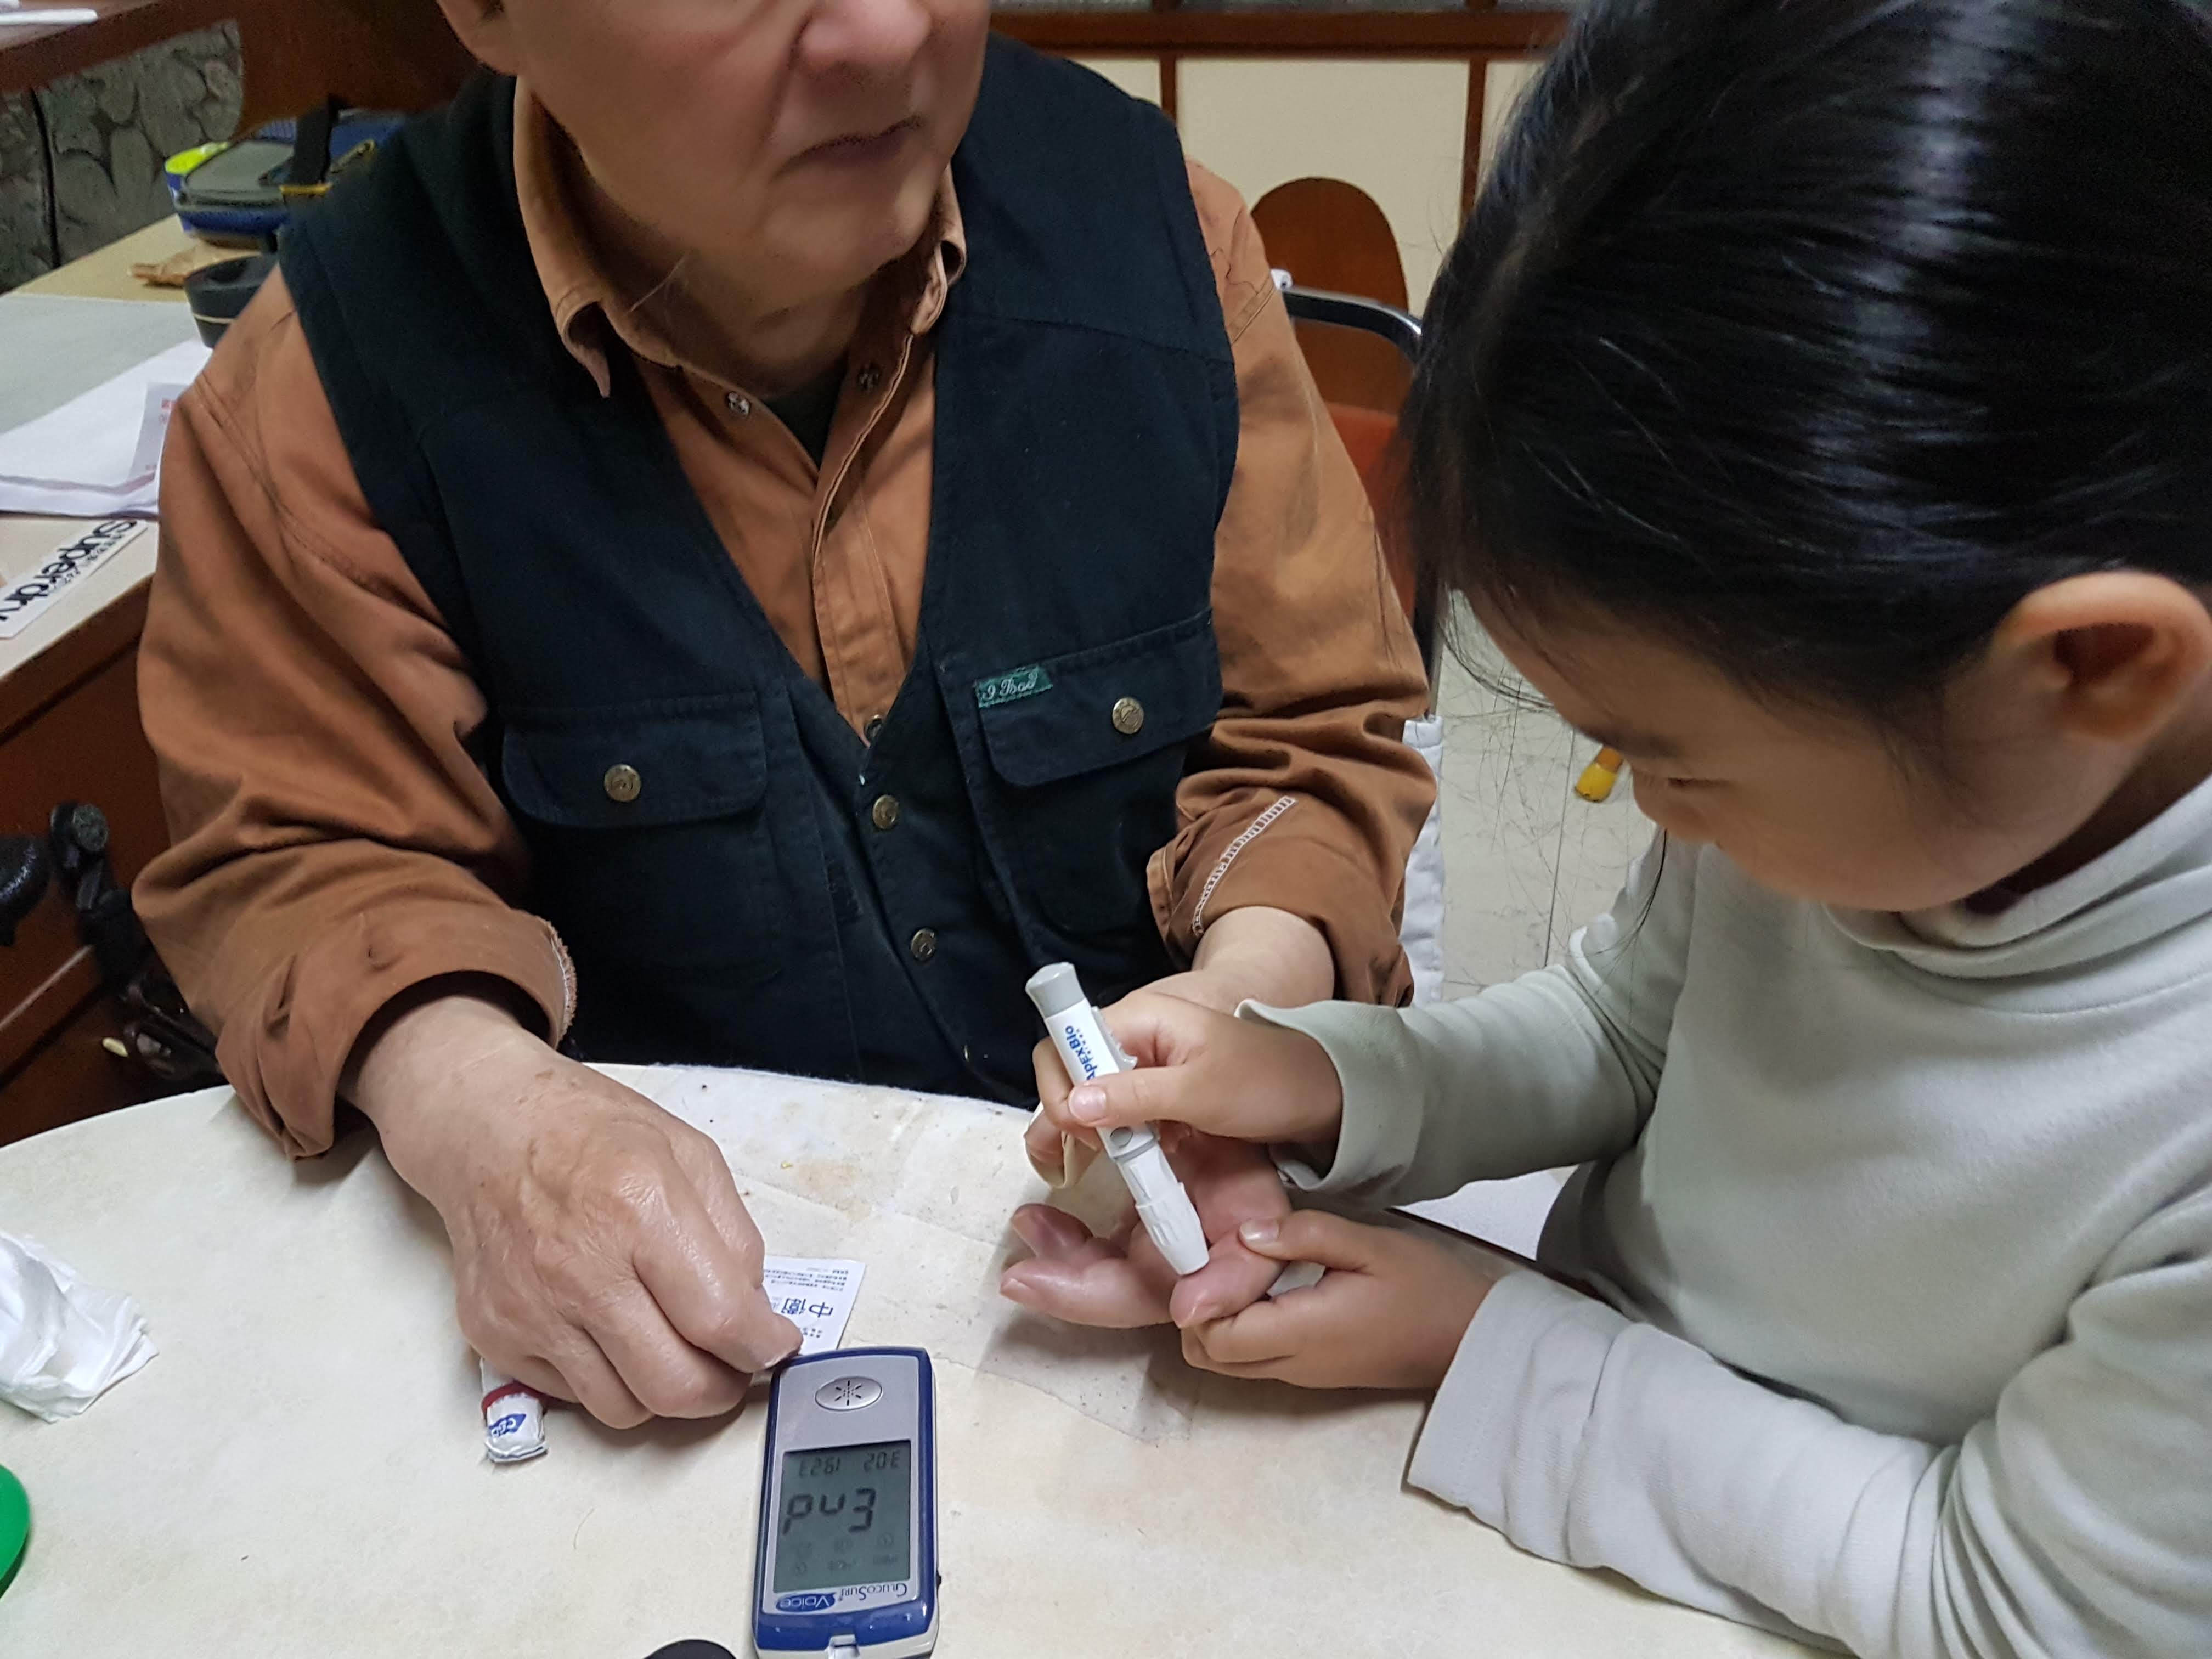 3.孝行獎年紀最小的得獎者林妍希協助爺爺測量血糖